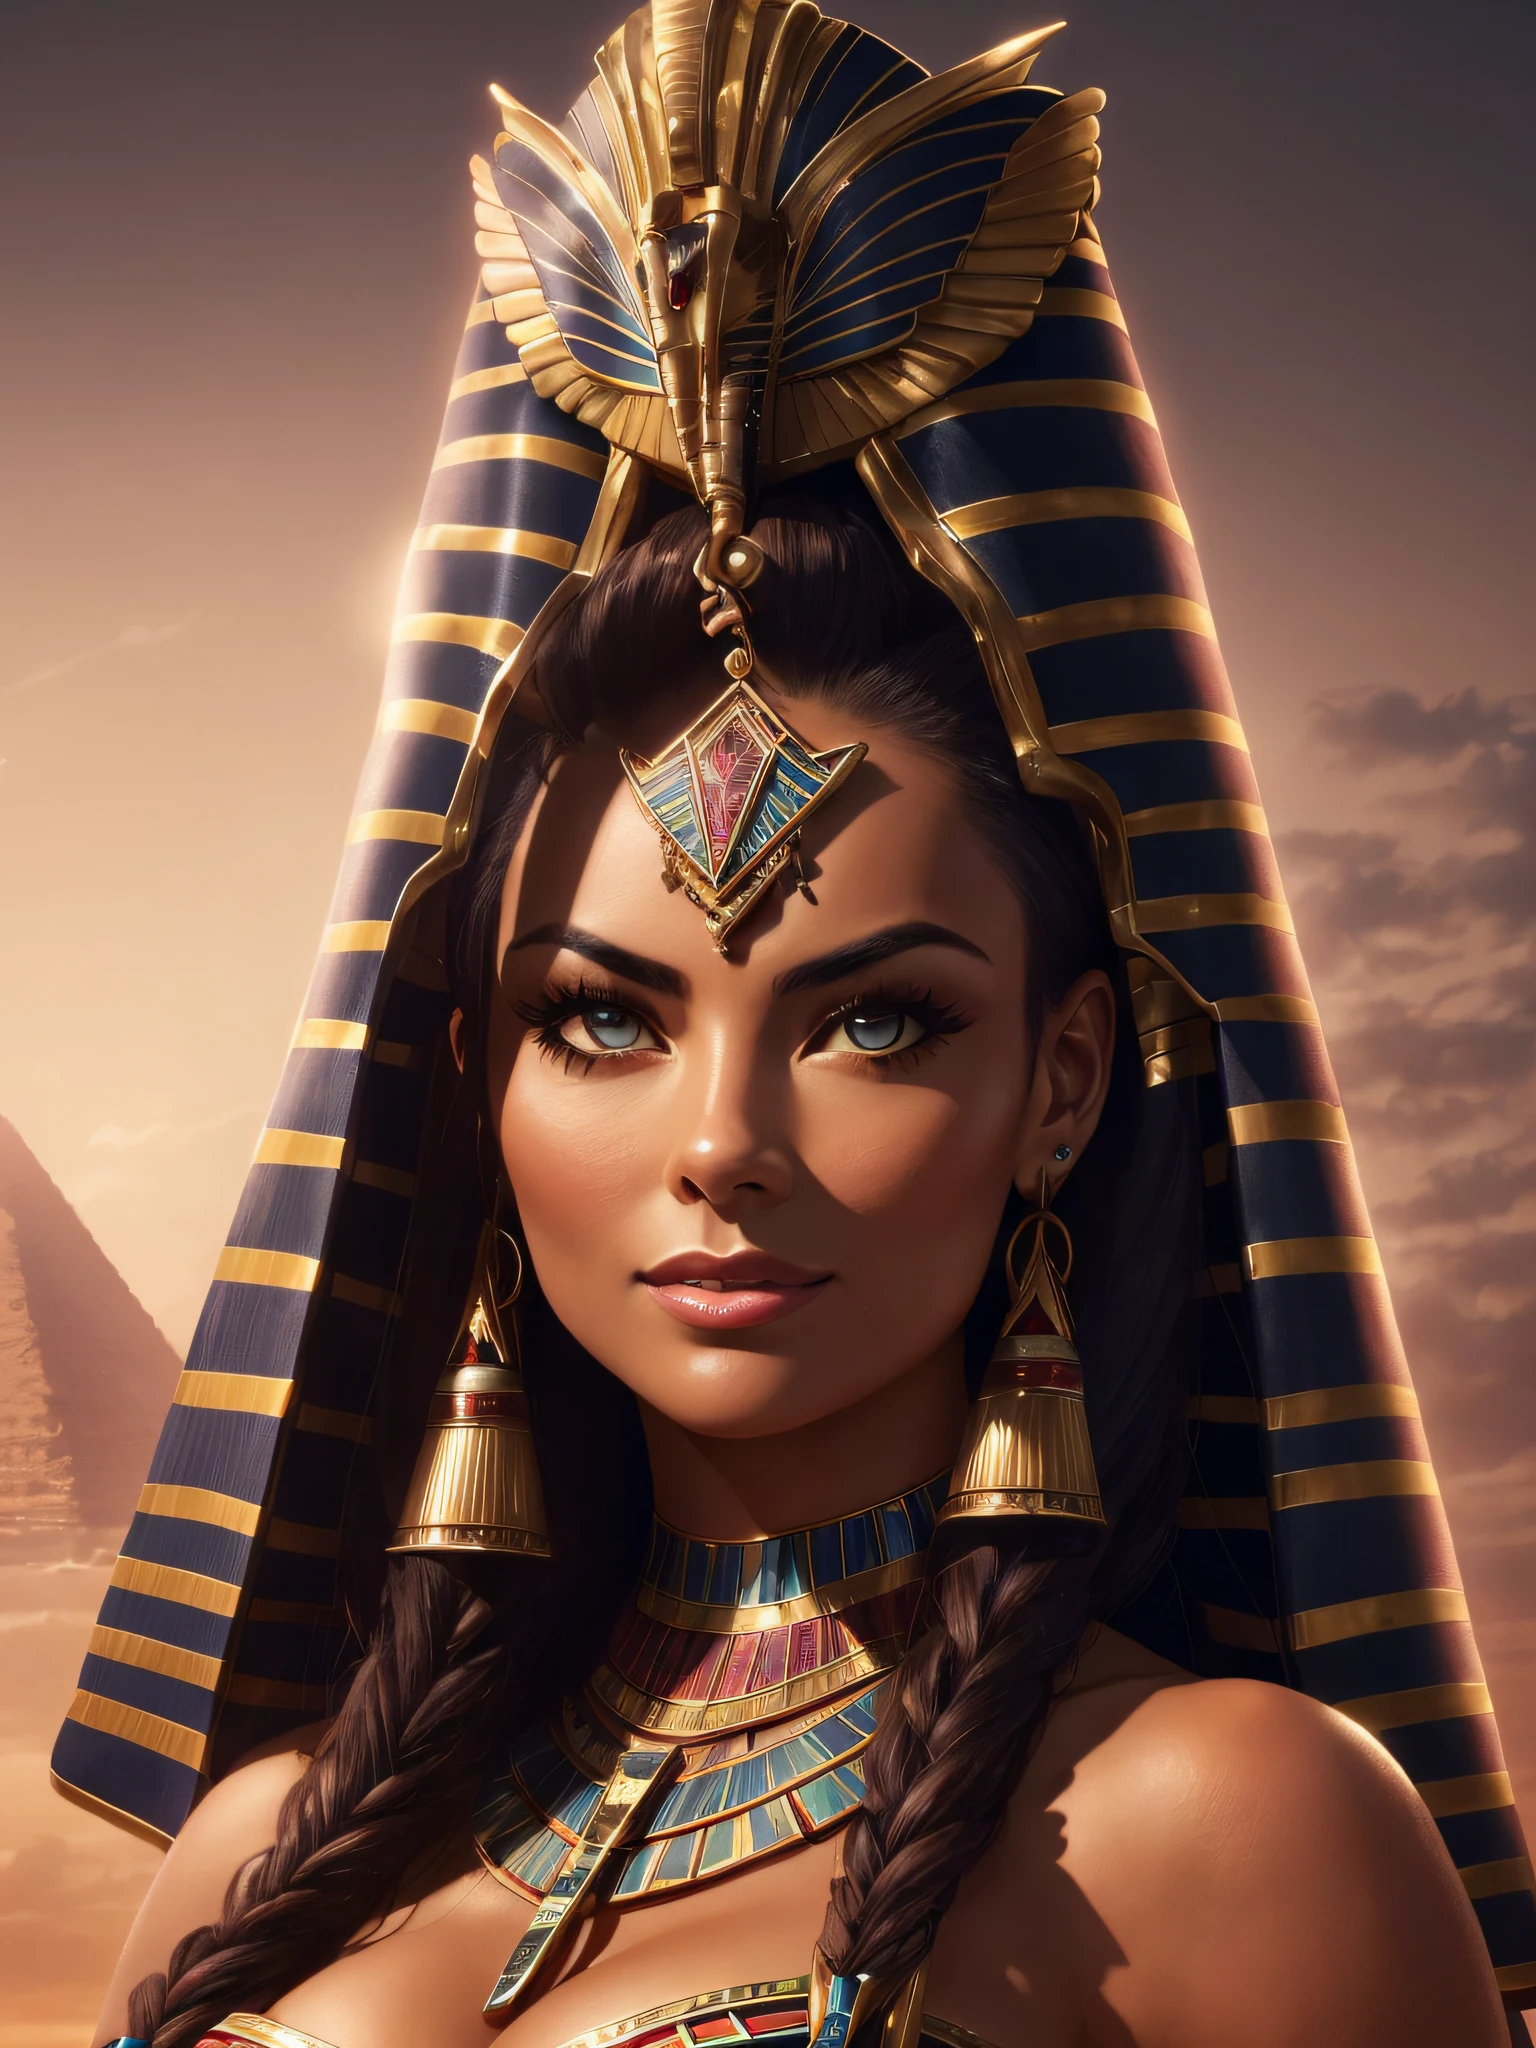 (Fondo de pantalla extremadamente detallado de la unidad CG 8k.), mujer egipcia (Carmen Electra), Ultra detallado, cara perfecta, pelo oscuro y rizado, en el contexto del antiguo Egipto, piel oscura con un ligero brillo, luz del crepúsculo ligeramente alta, con tatuaje egipcio, mirada misteriosa, y una leve sonrisa en su rostro, (Ultra detallado eyes).